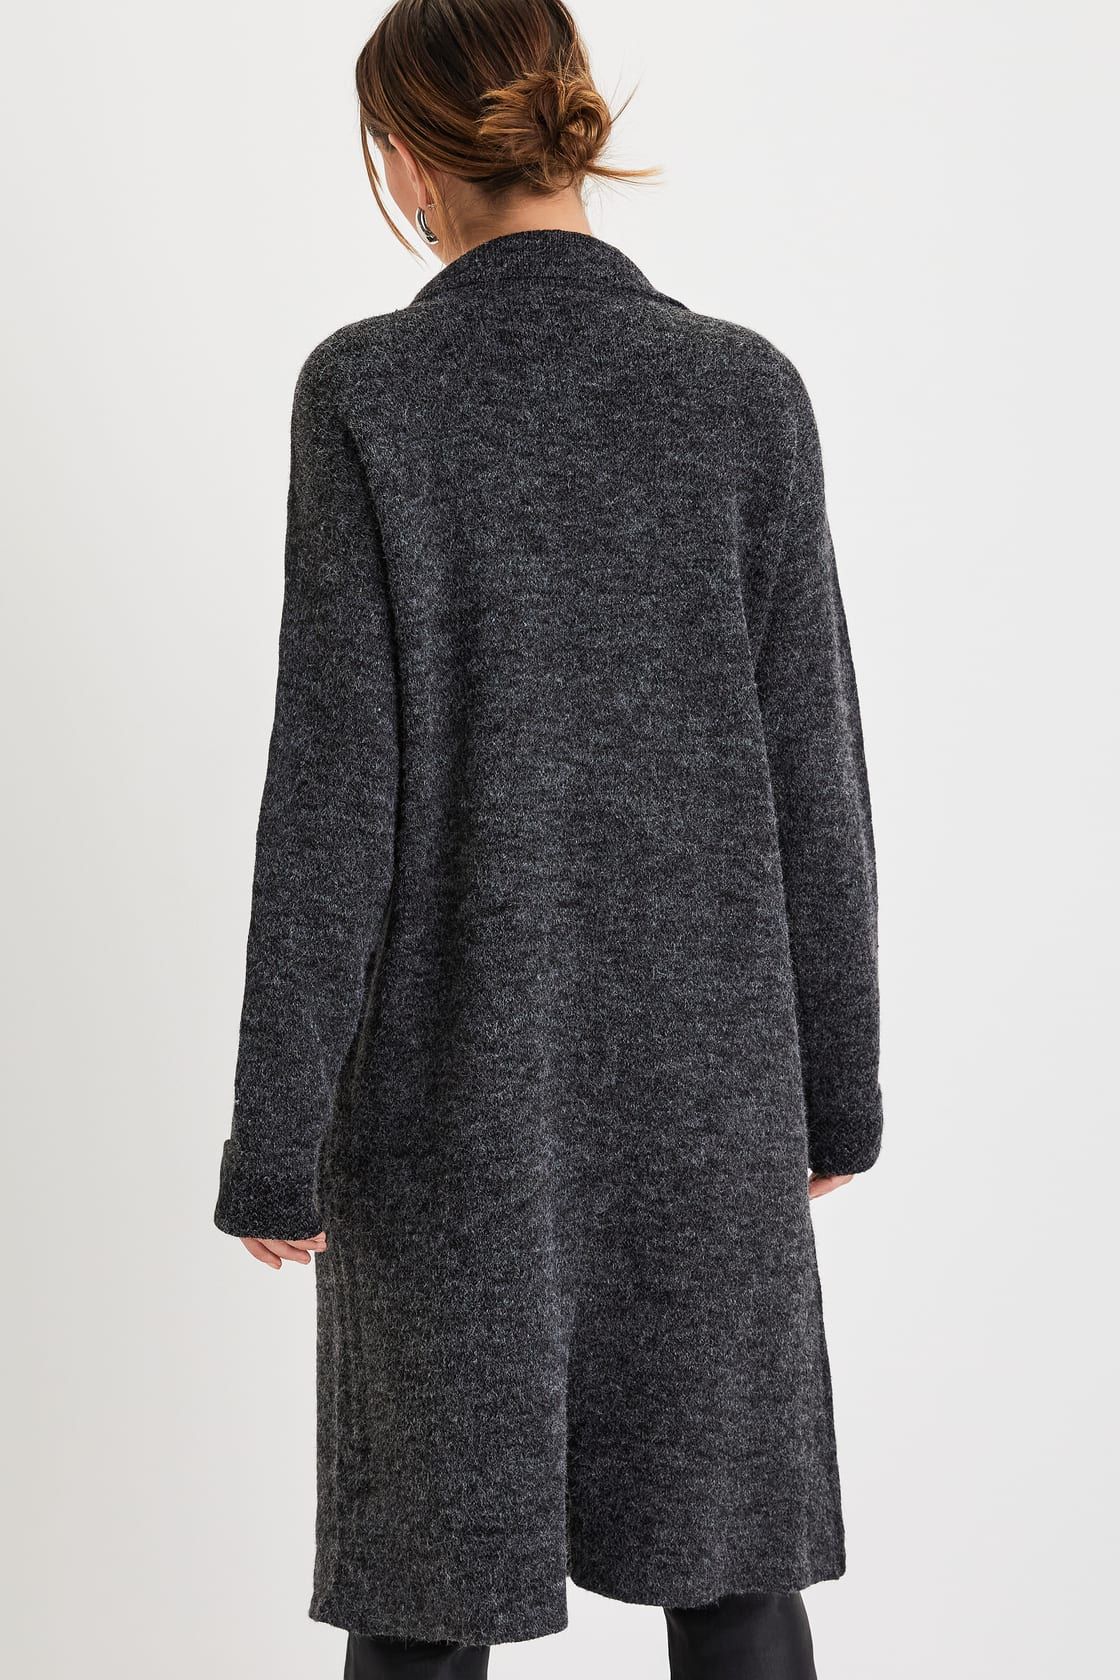 Cuddle Club Black Marled Fuzzy Long Sleeve Sweater Coat | Lulus